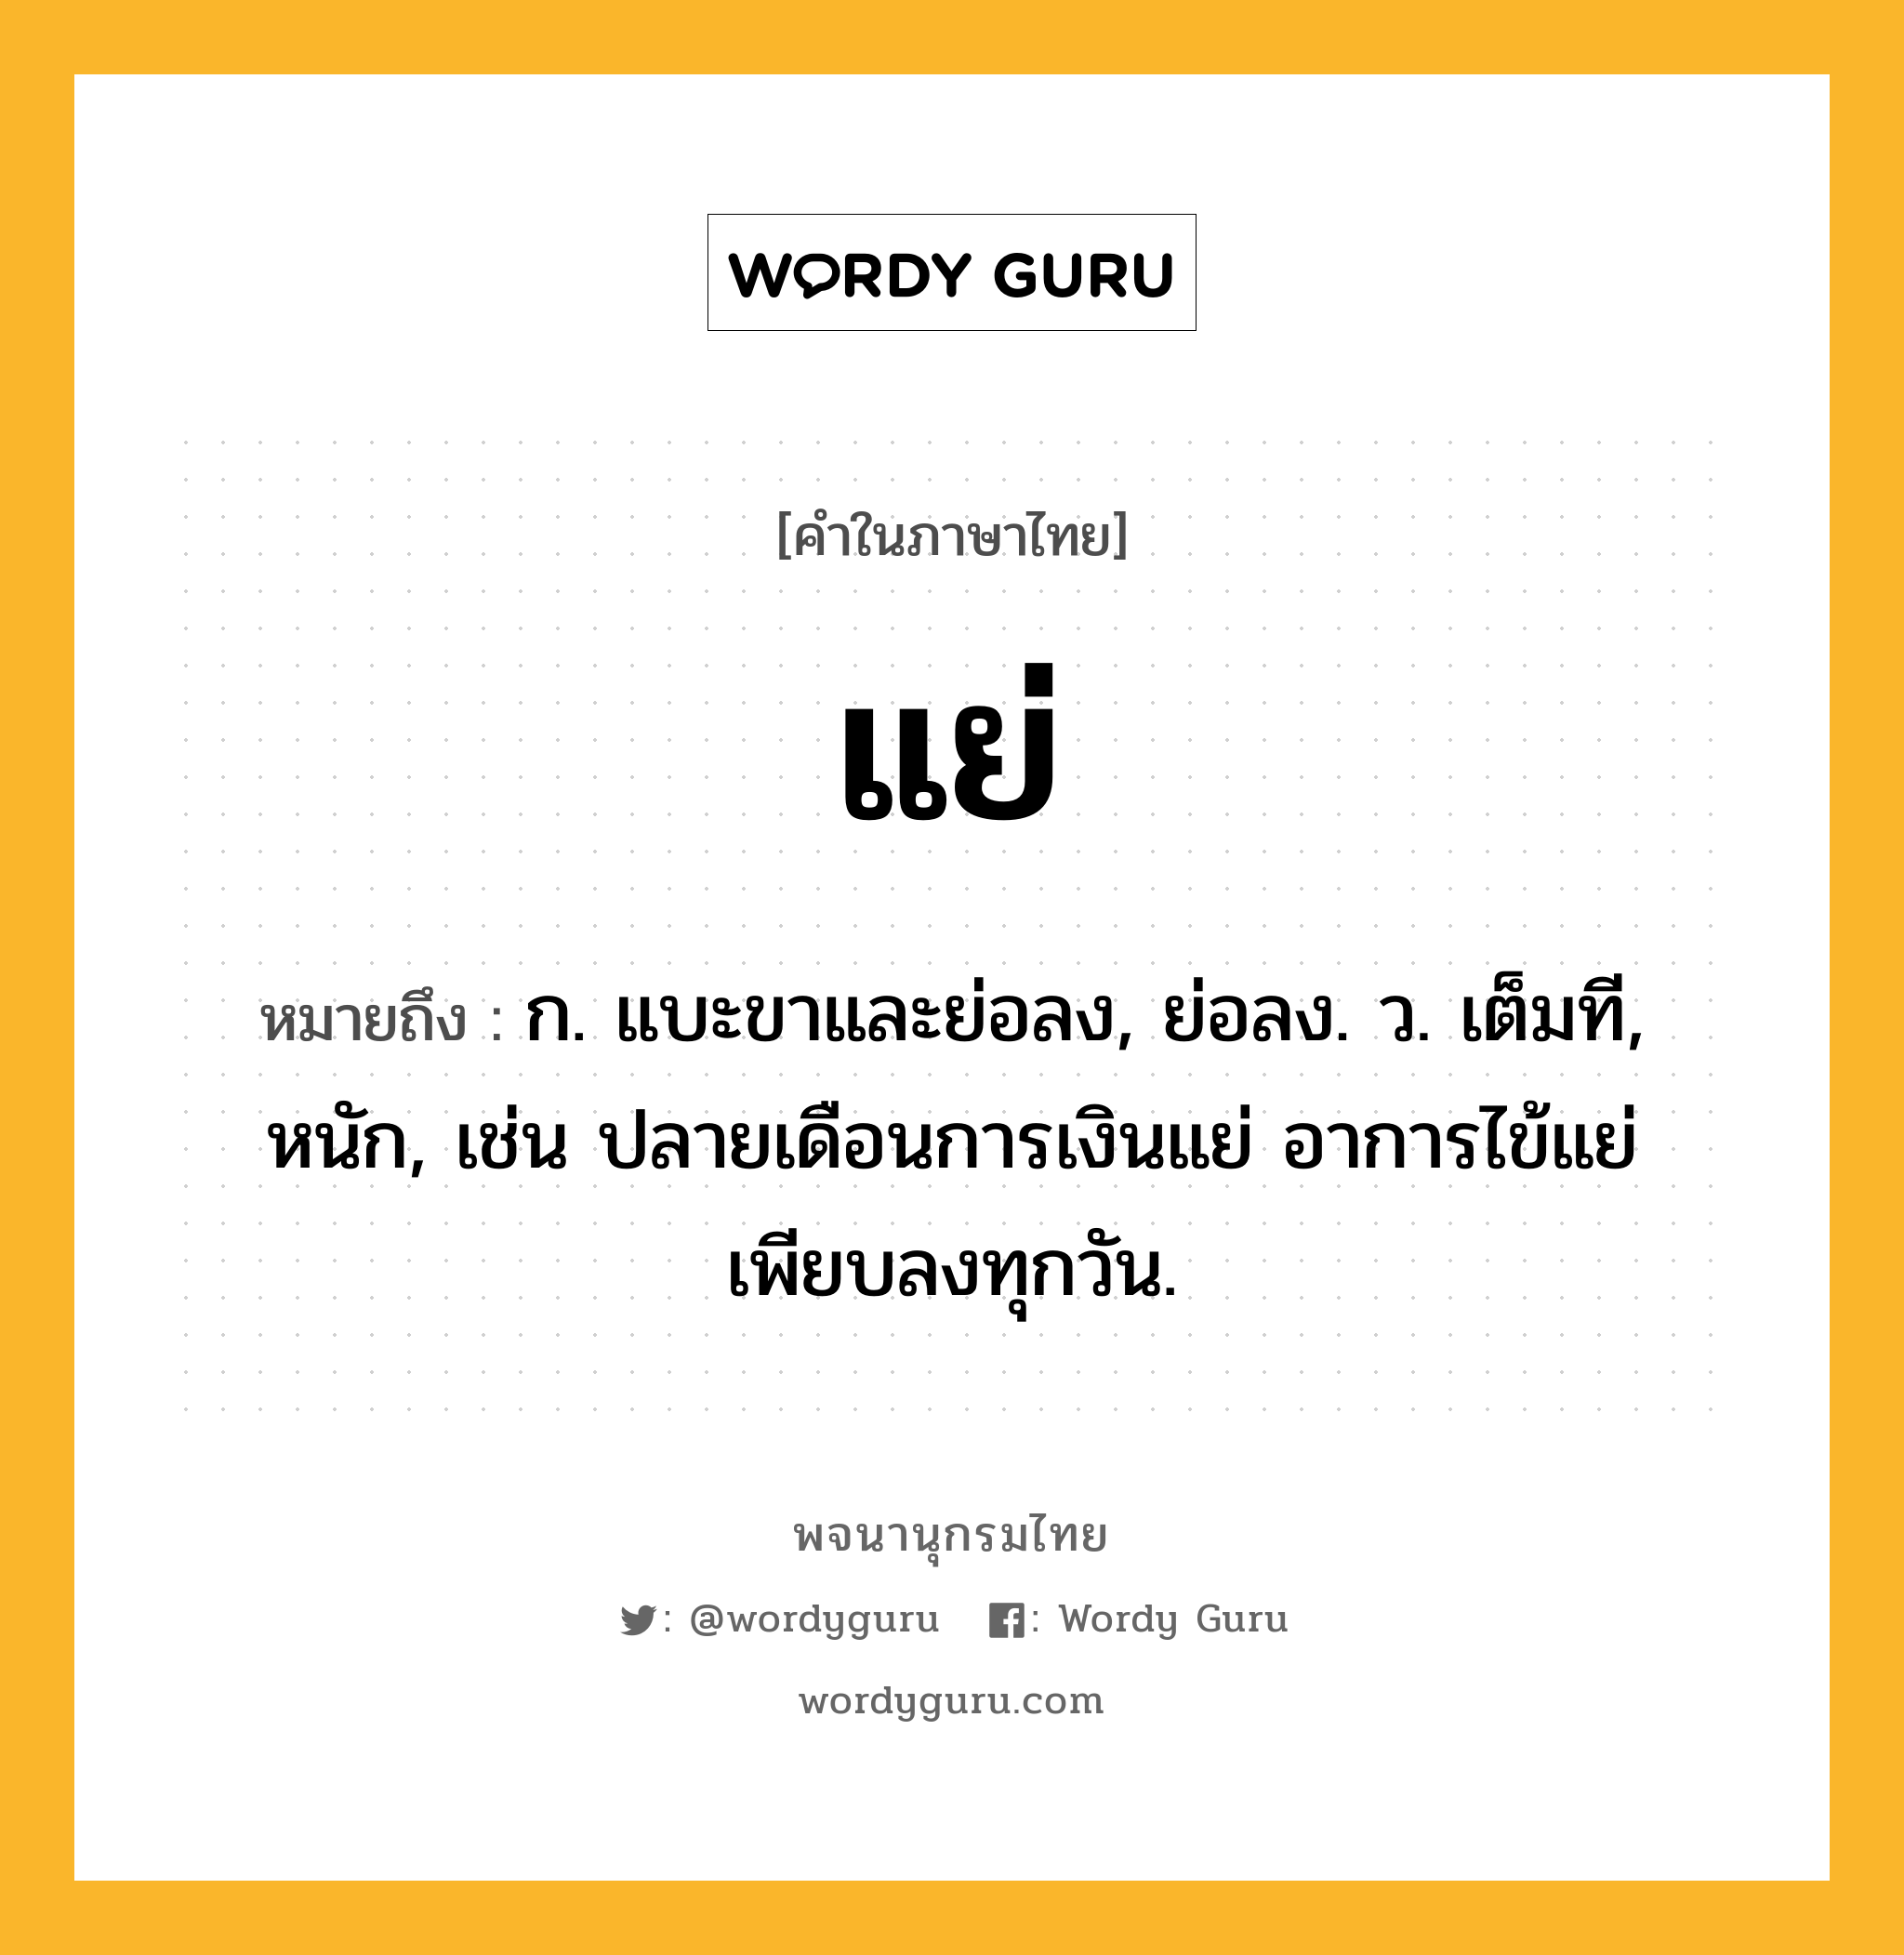 แย่ หมายถึงอะไร?, คำในภาษาไทย แย่ หมายถึง ก. แบะขาและย่อลง, ย่อลง. ว. เต็มที, หนัก, เช่น ปลายเดือนการเงินแย่ อาการไข้แย่ เพียบลงทุกวัน.